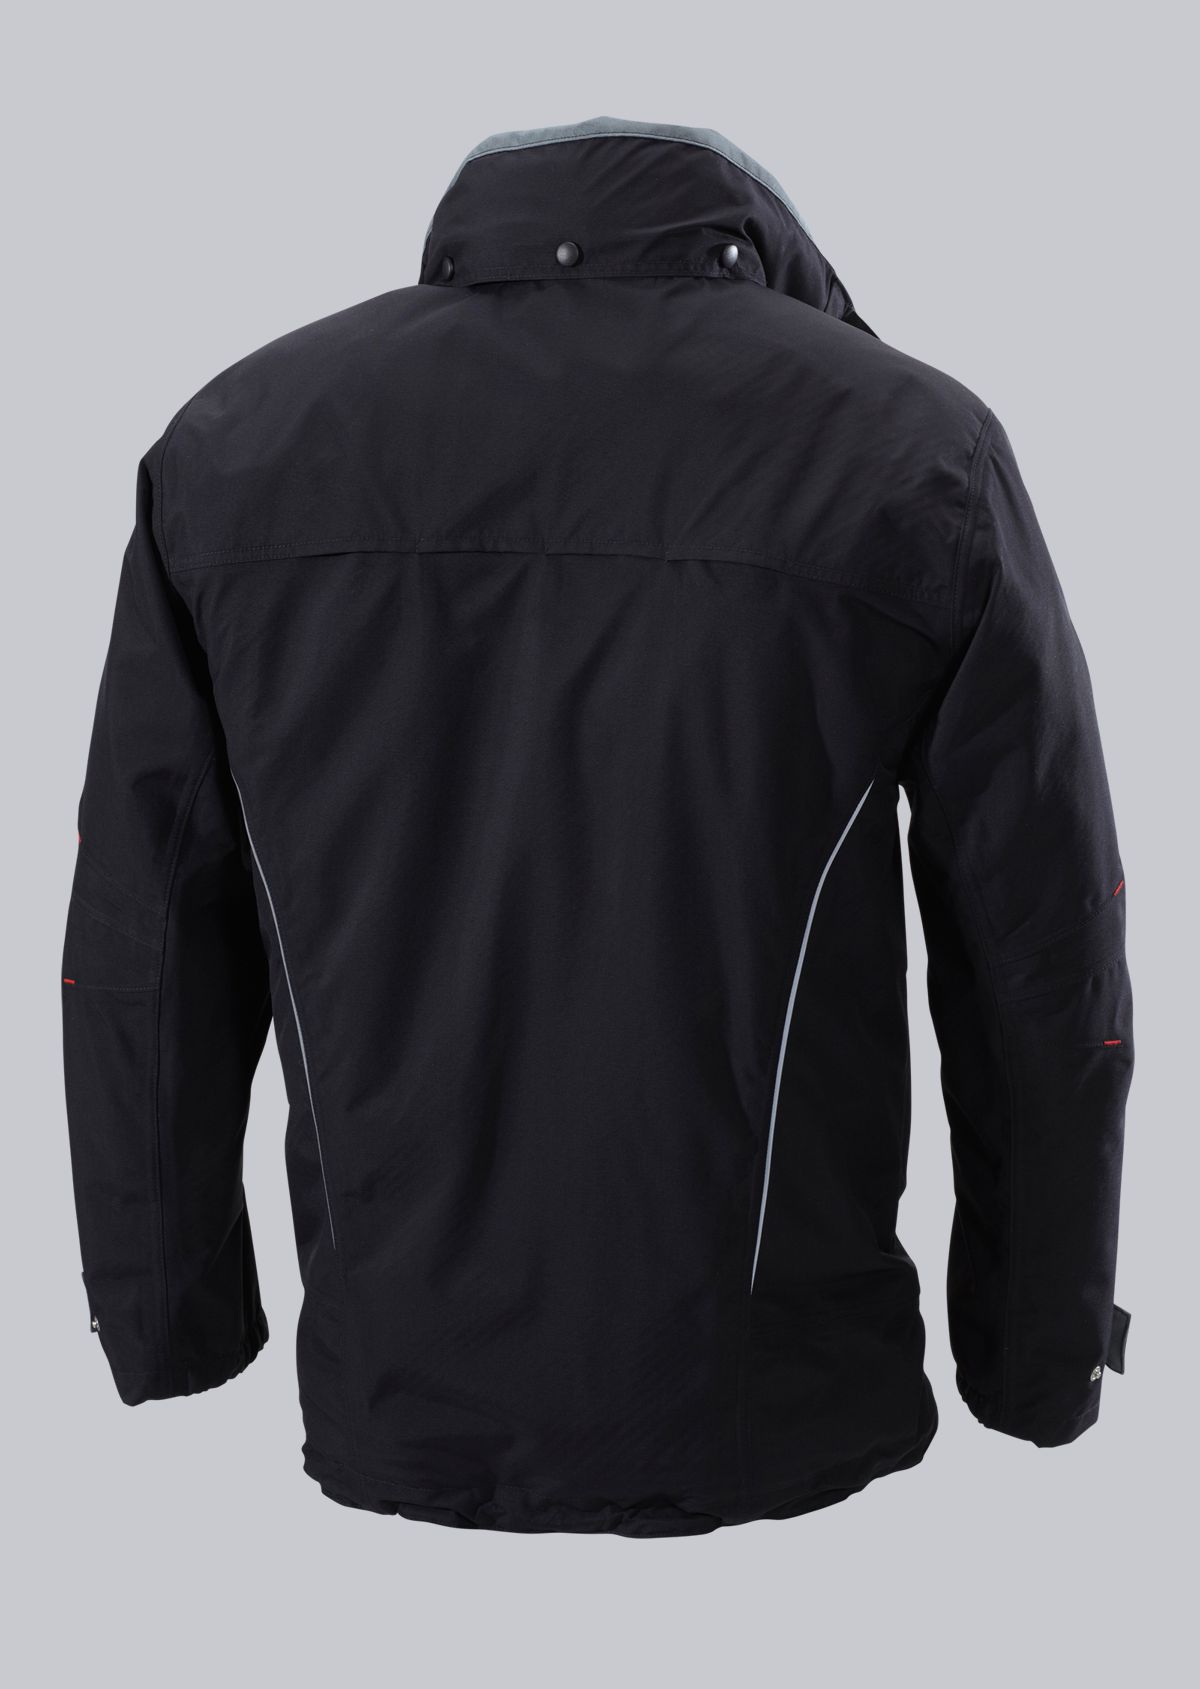 BP® Weatherproof jacket